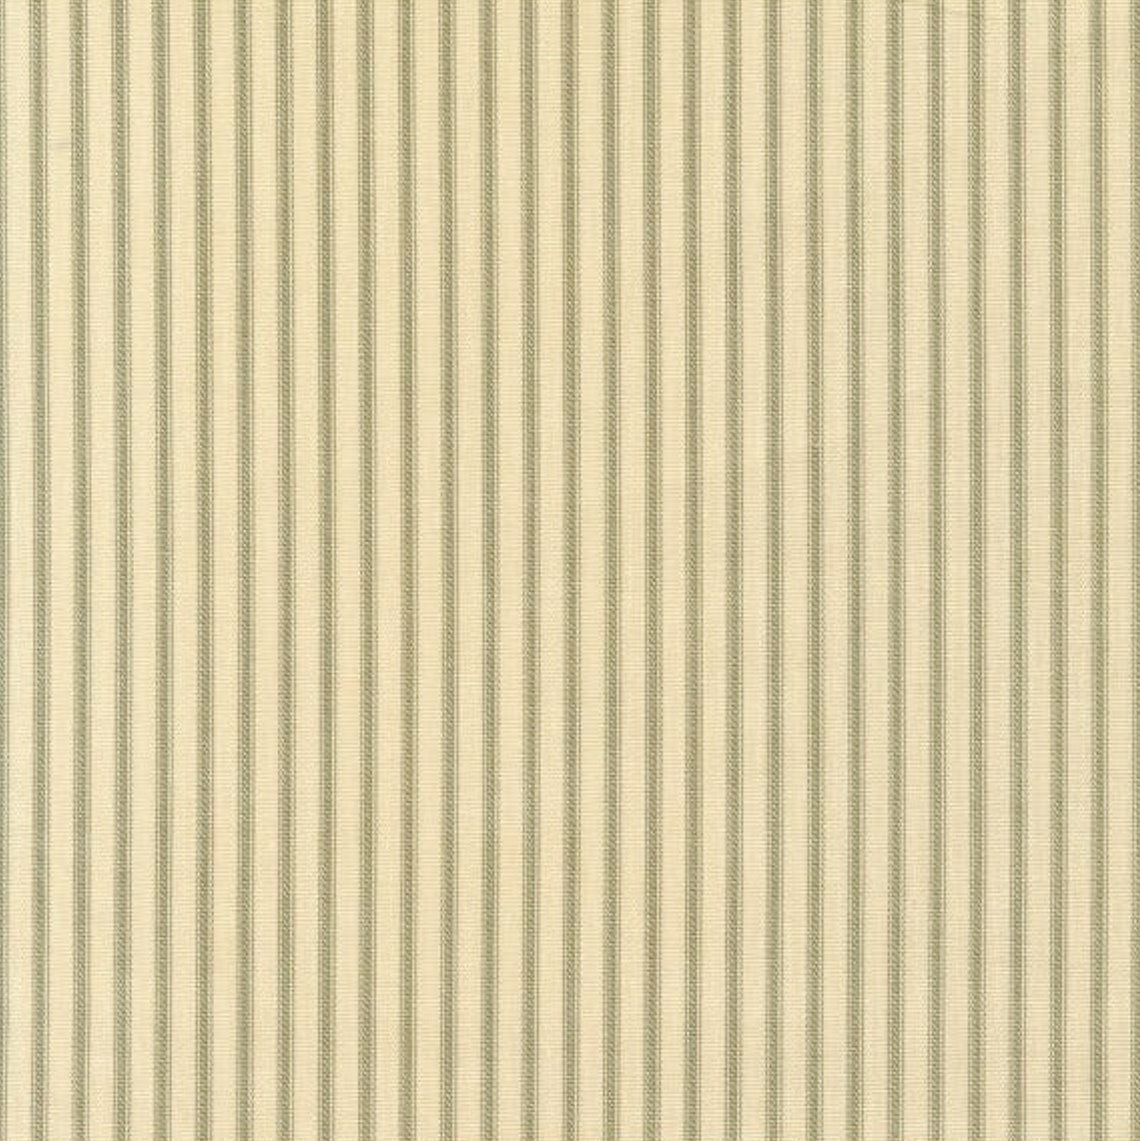 duvet cover in farmhouse pine green ticking stripe on beige